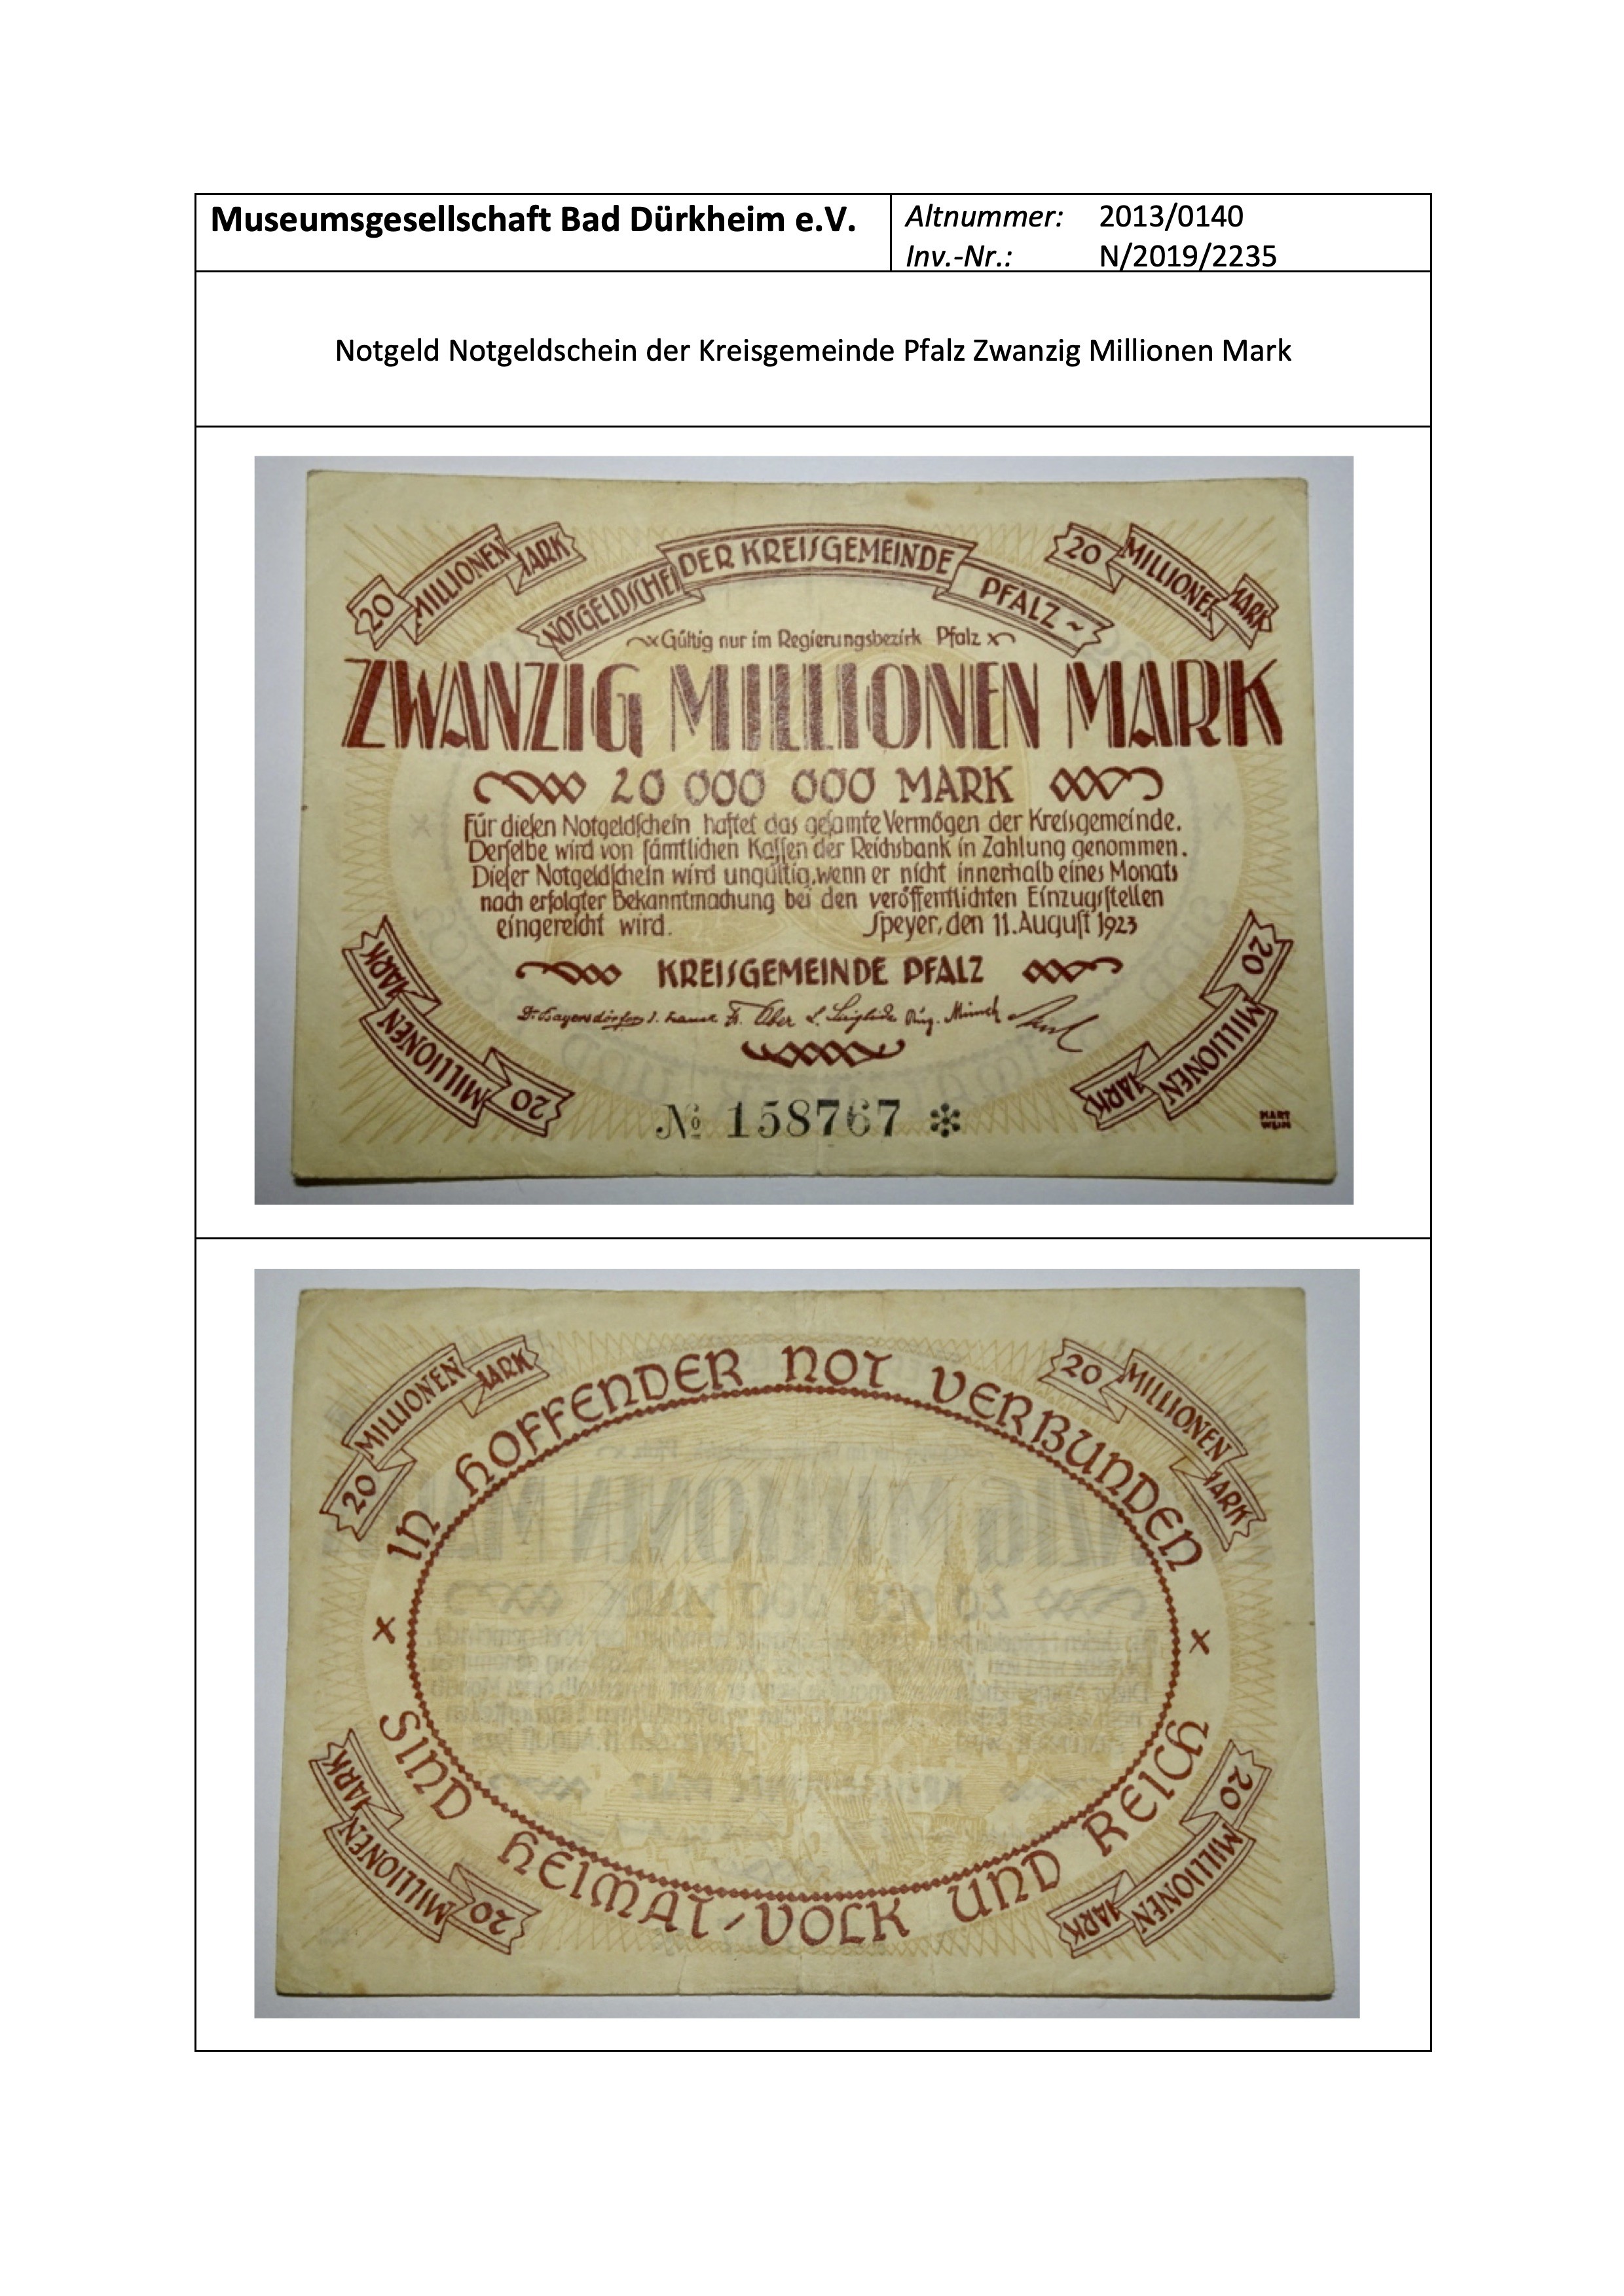 Notgeld Notgeldschein der Kreisgemeinde Pfalz Zwanzig Millionen Mark (Museumsgesellschaft Bad Dürkheim e.V. CC BY-NC-SA)